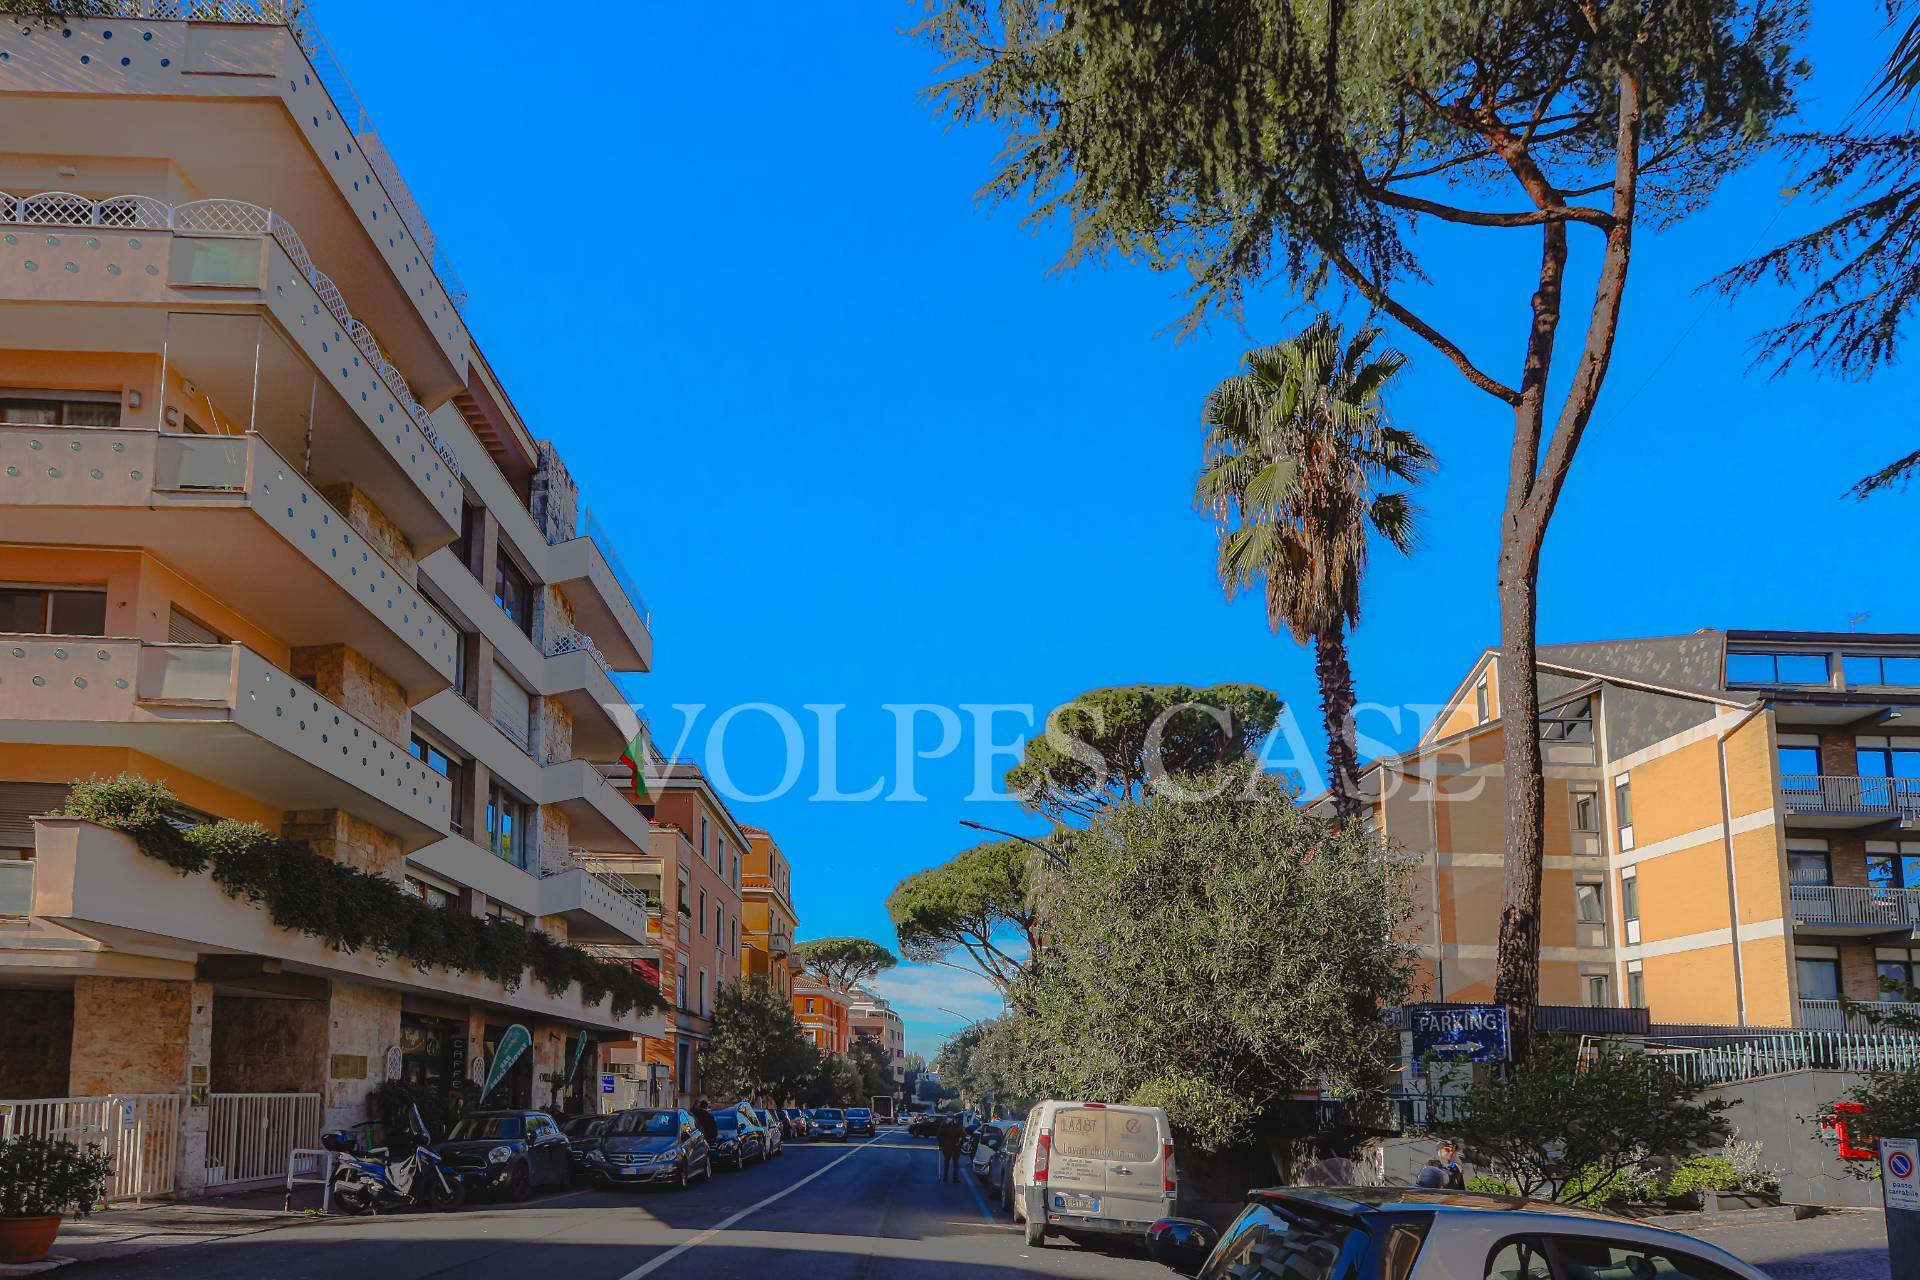 Appartamento in vendita a Roma, 2 locali, zona Zona: 2 . Flaminio, Parioli, Pinciano, Villa Borghese, prezzo € 340.000 | CambioCasa.it